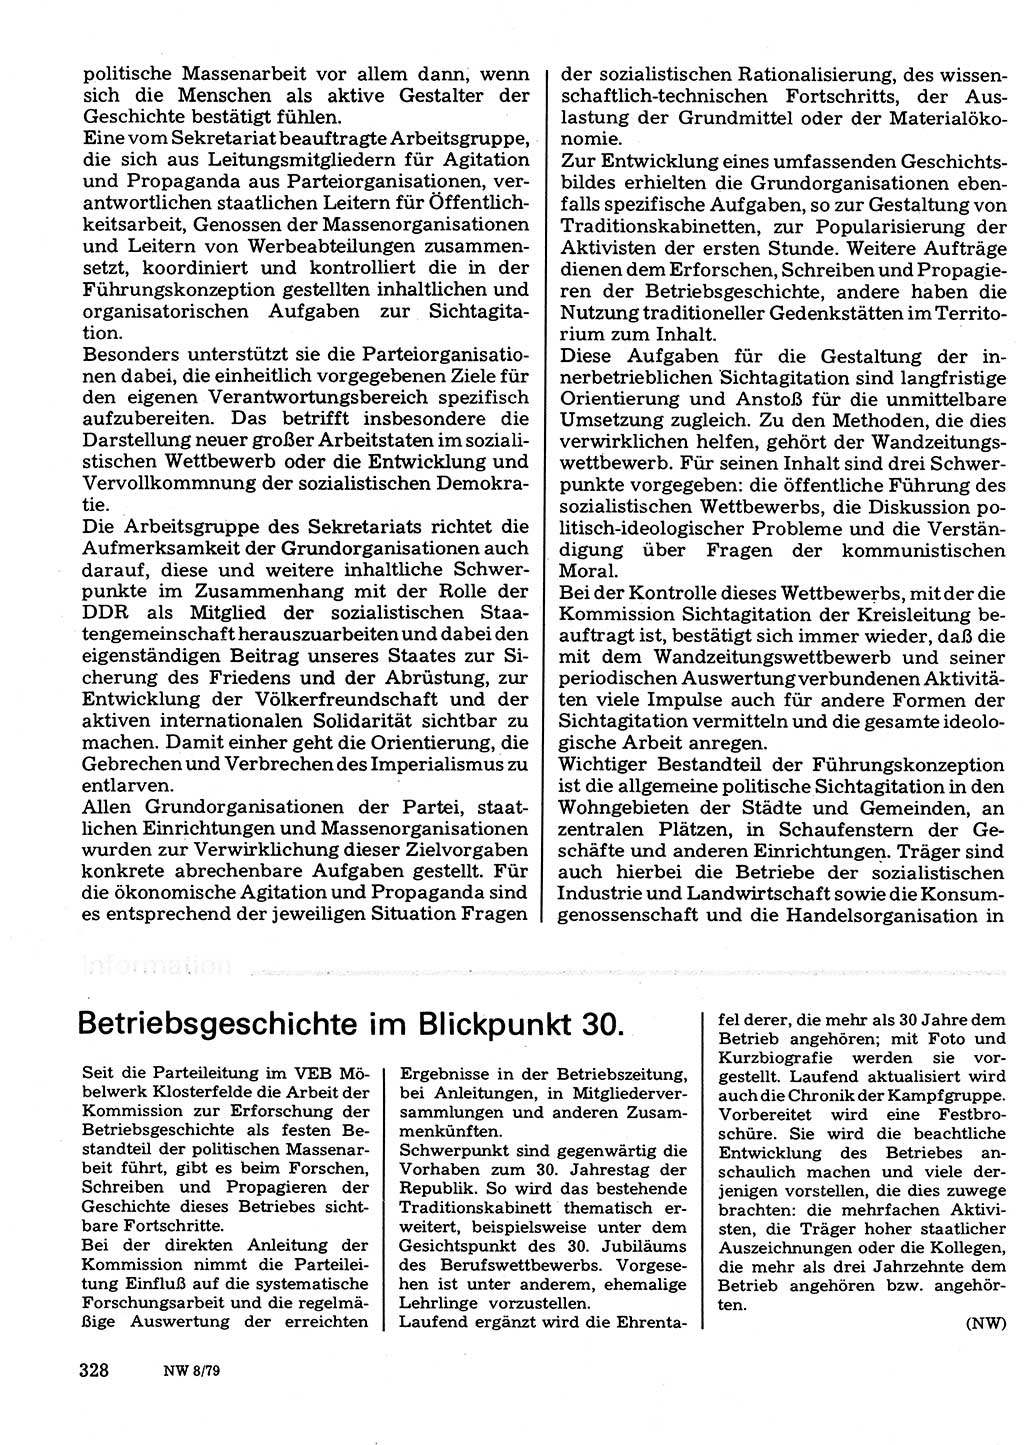 Neuer Weg (NW), Organ des Zentralkomitees (ZK) der SED (Sozialistische Einheitspartei Deutschlands) für Fragen des Parteilebens, 34. Jahrgang [Deutsche Demokratische Republik (DDR)] 1979, Seite 328 (NW ZK SED DDR 1979, S. 328)